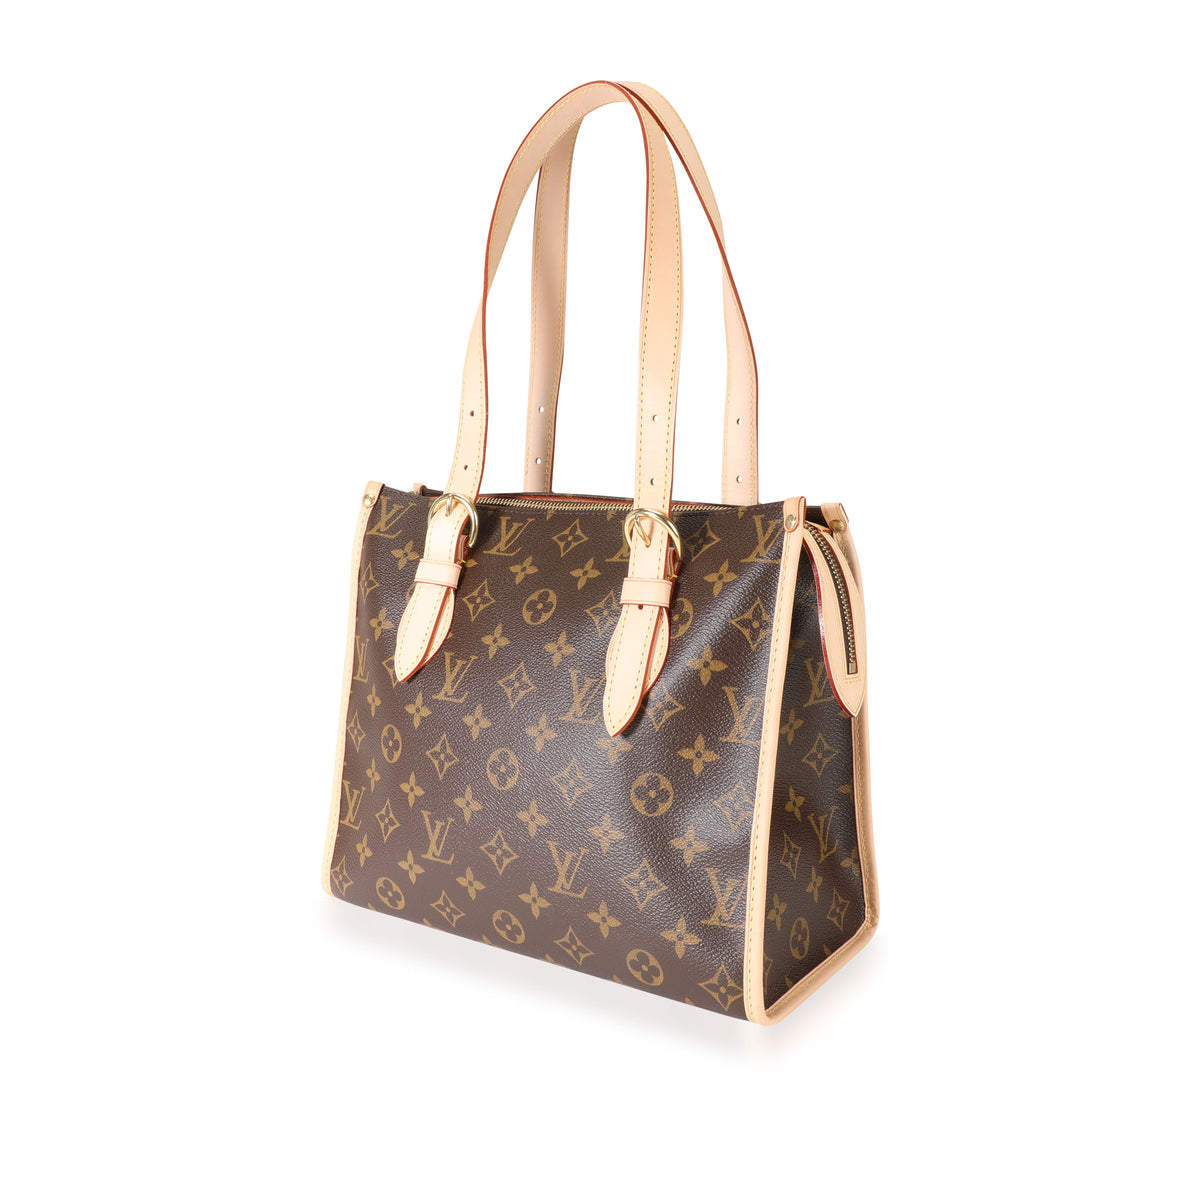 Louis Vuitton Popincourt haut handbag in monogram canvas. Brown